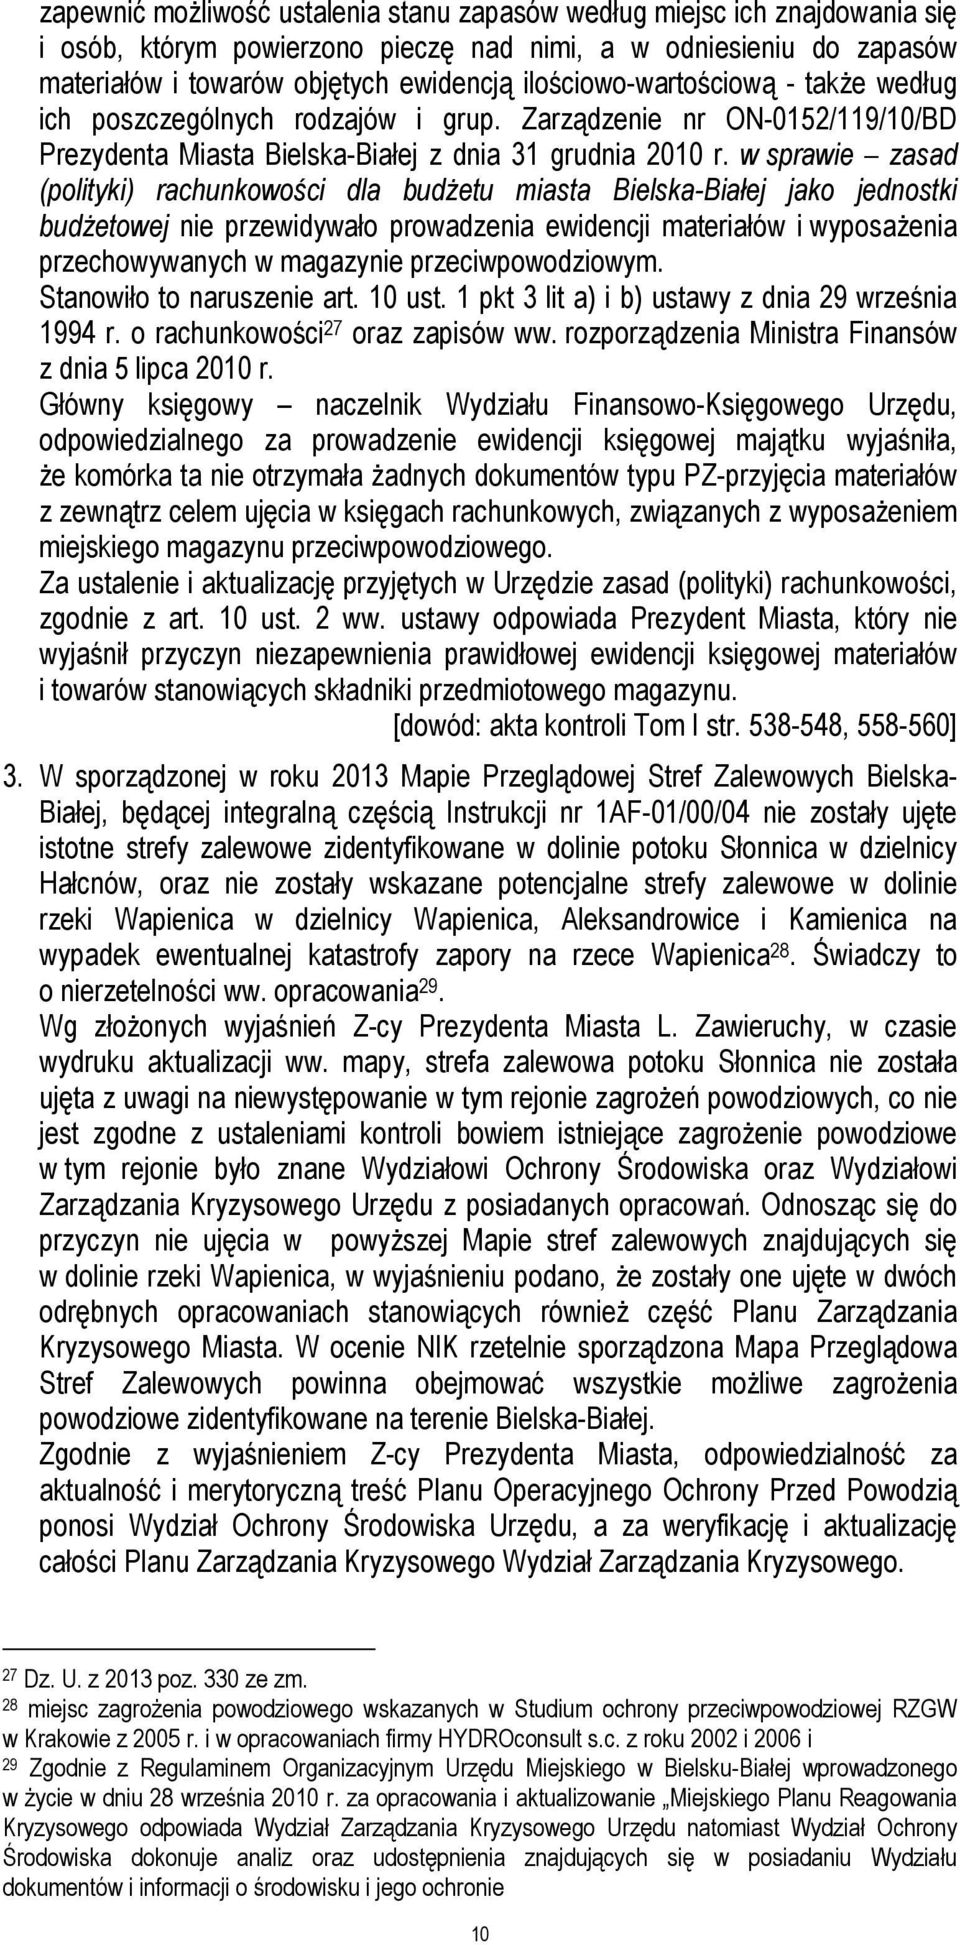 w sprawie zasad (polityki) rachunkowości dla budżetu miasta Bielska-Białej jako jednostki budżetowej nie przewidywało prowadzenia ewidencji materiałów i wyposażenia przechowywanych w magazynie